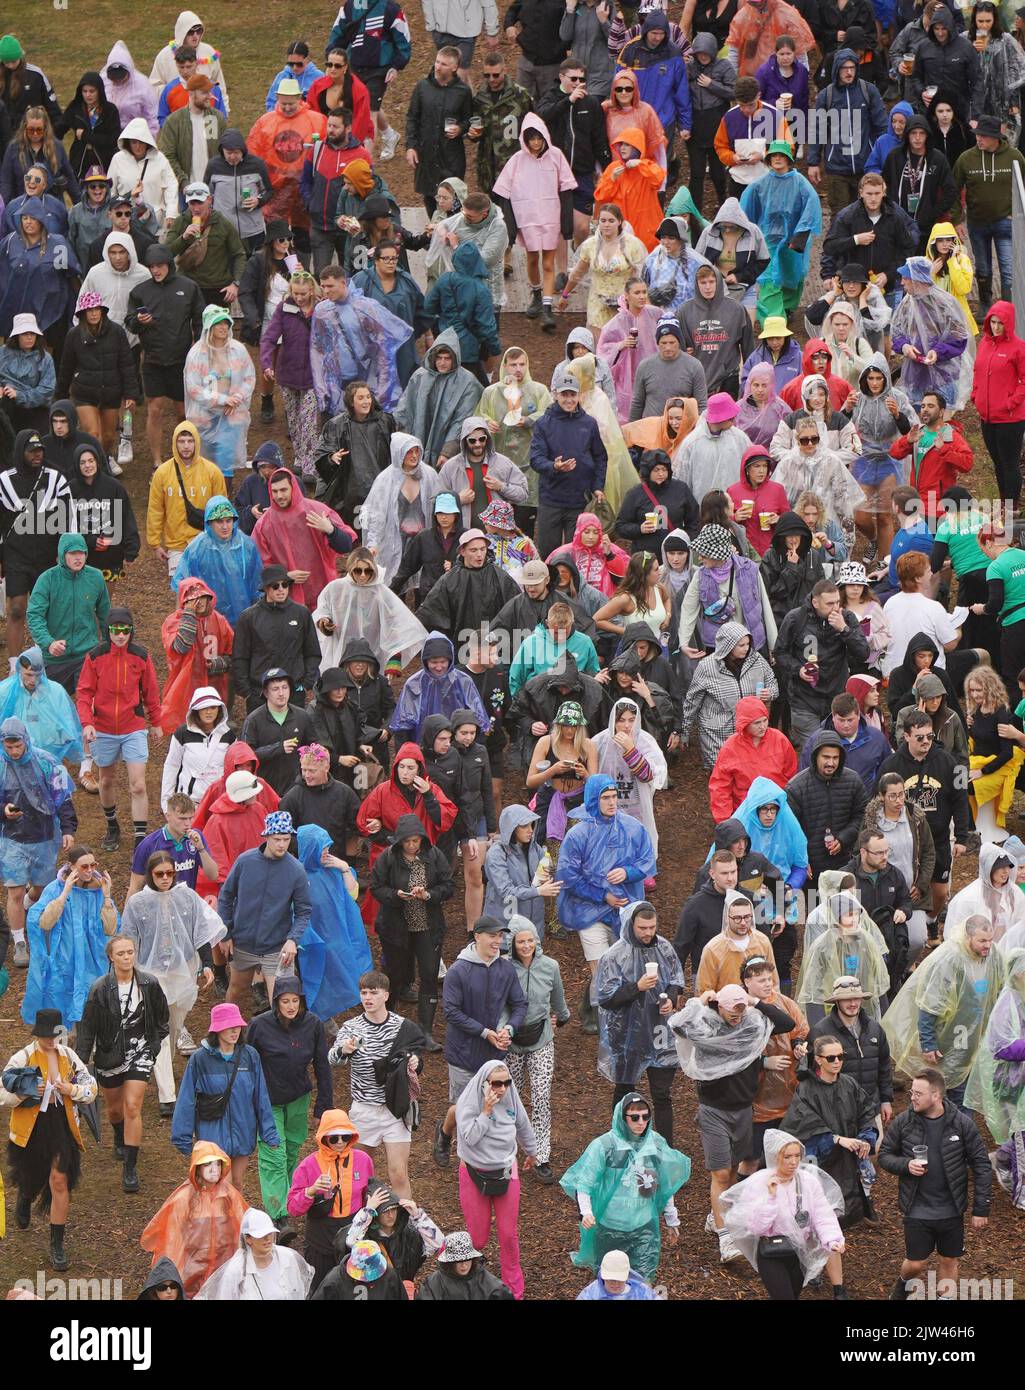 Menschenmassen tragen Regenkleidung während des Electric Picnic Festivals in Stradbally, County Laois. Bilddatum: Samstag, 3. September 2022. Stockfoto